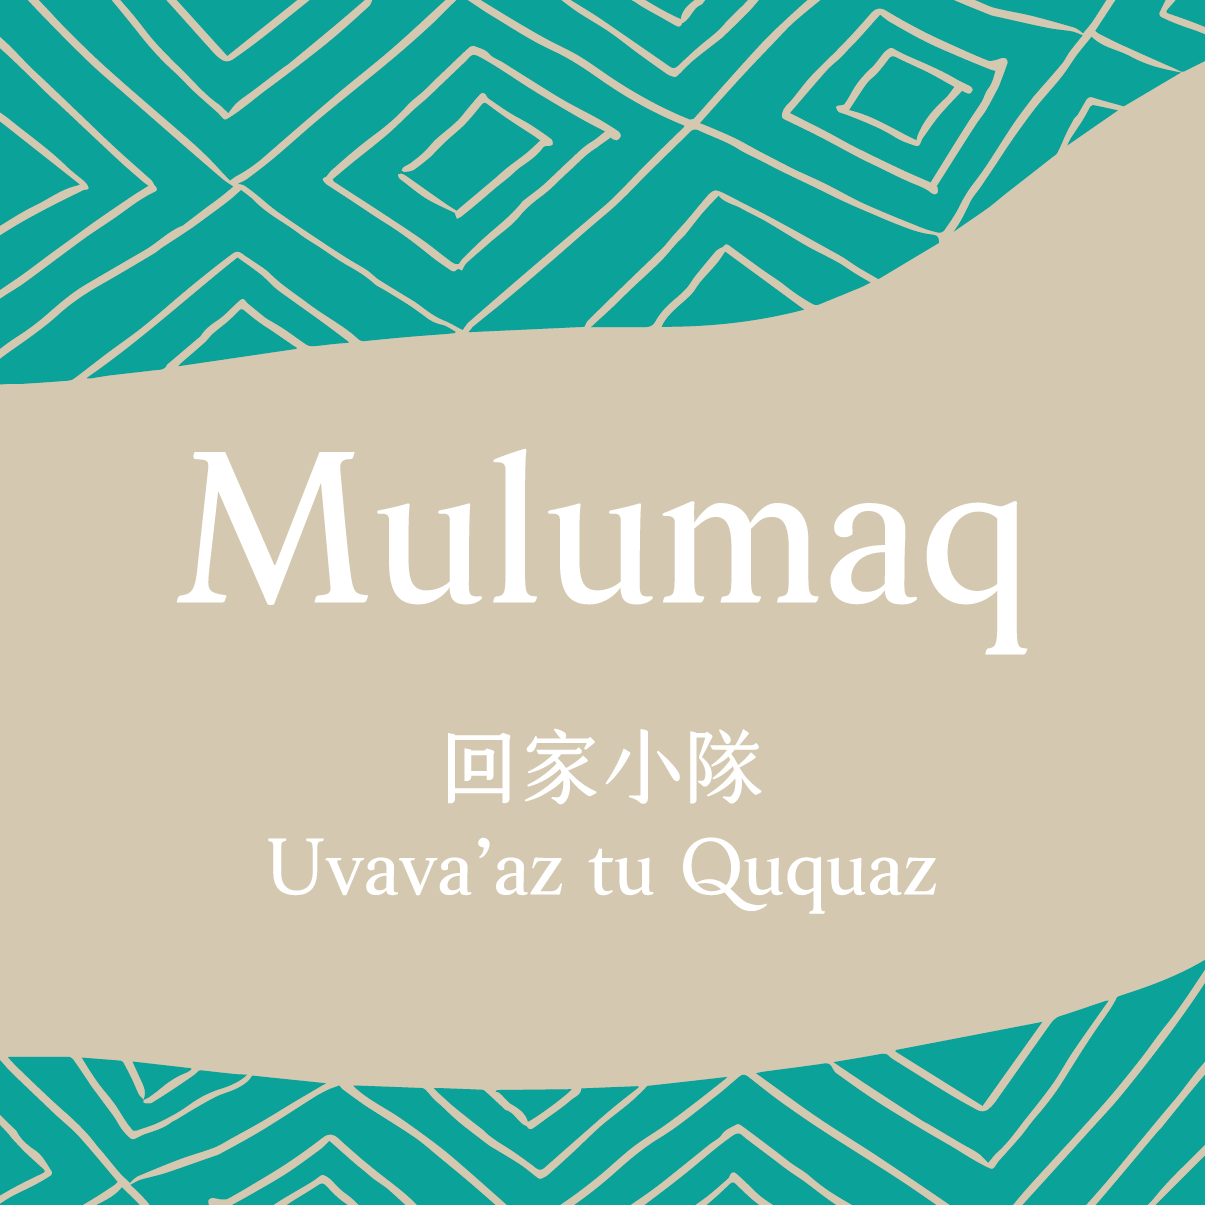 Mulumaq小隊 logo